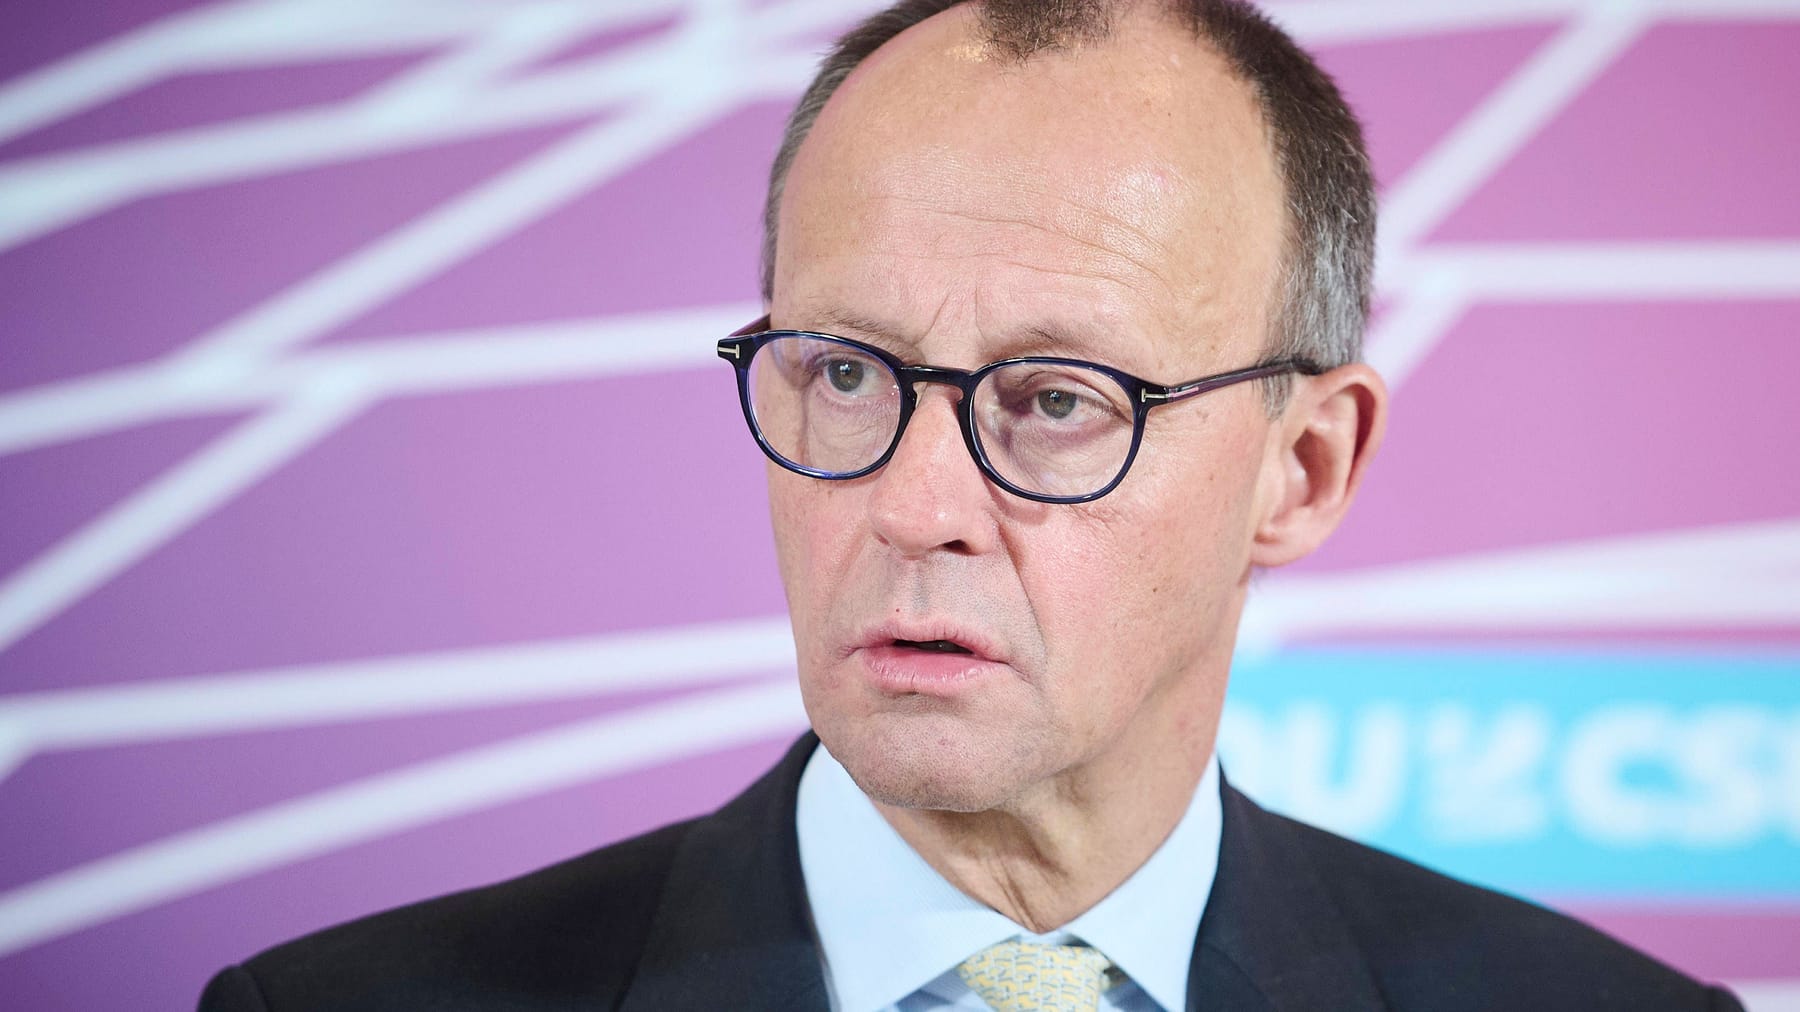 100.000 Euro-Parteispende an CDU bringt Merz in Erklärungsnot